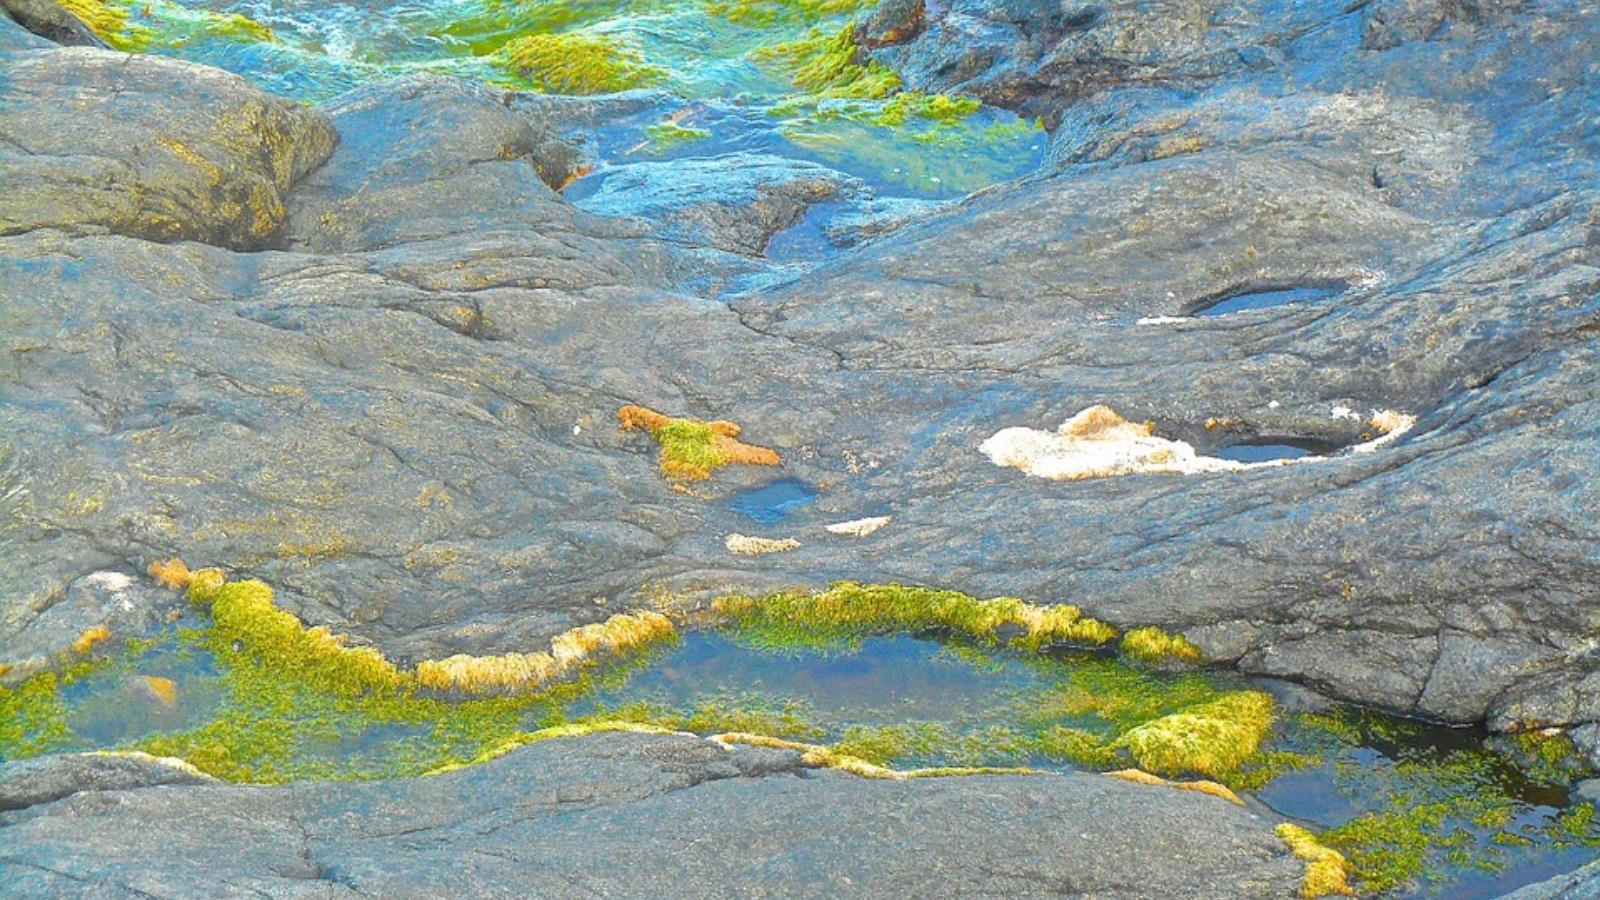  أهمية الأعشاب البحرية تمتد لتوفير كميات كبيرة من الطعام للثروة السمكية وامتصاص الكربون الزائد من المياه (بيكسابي)